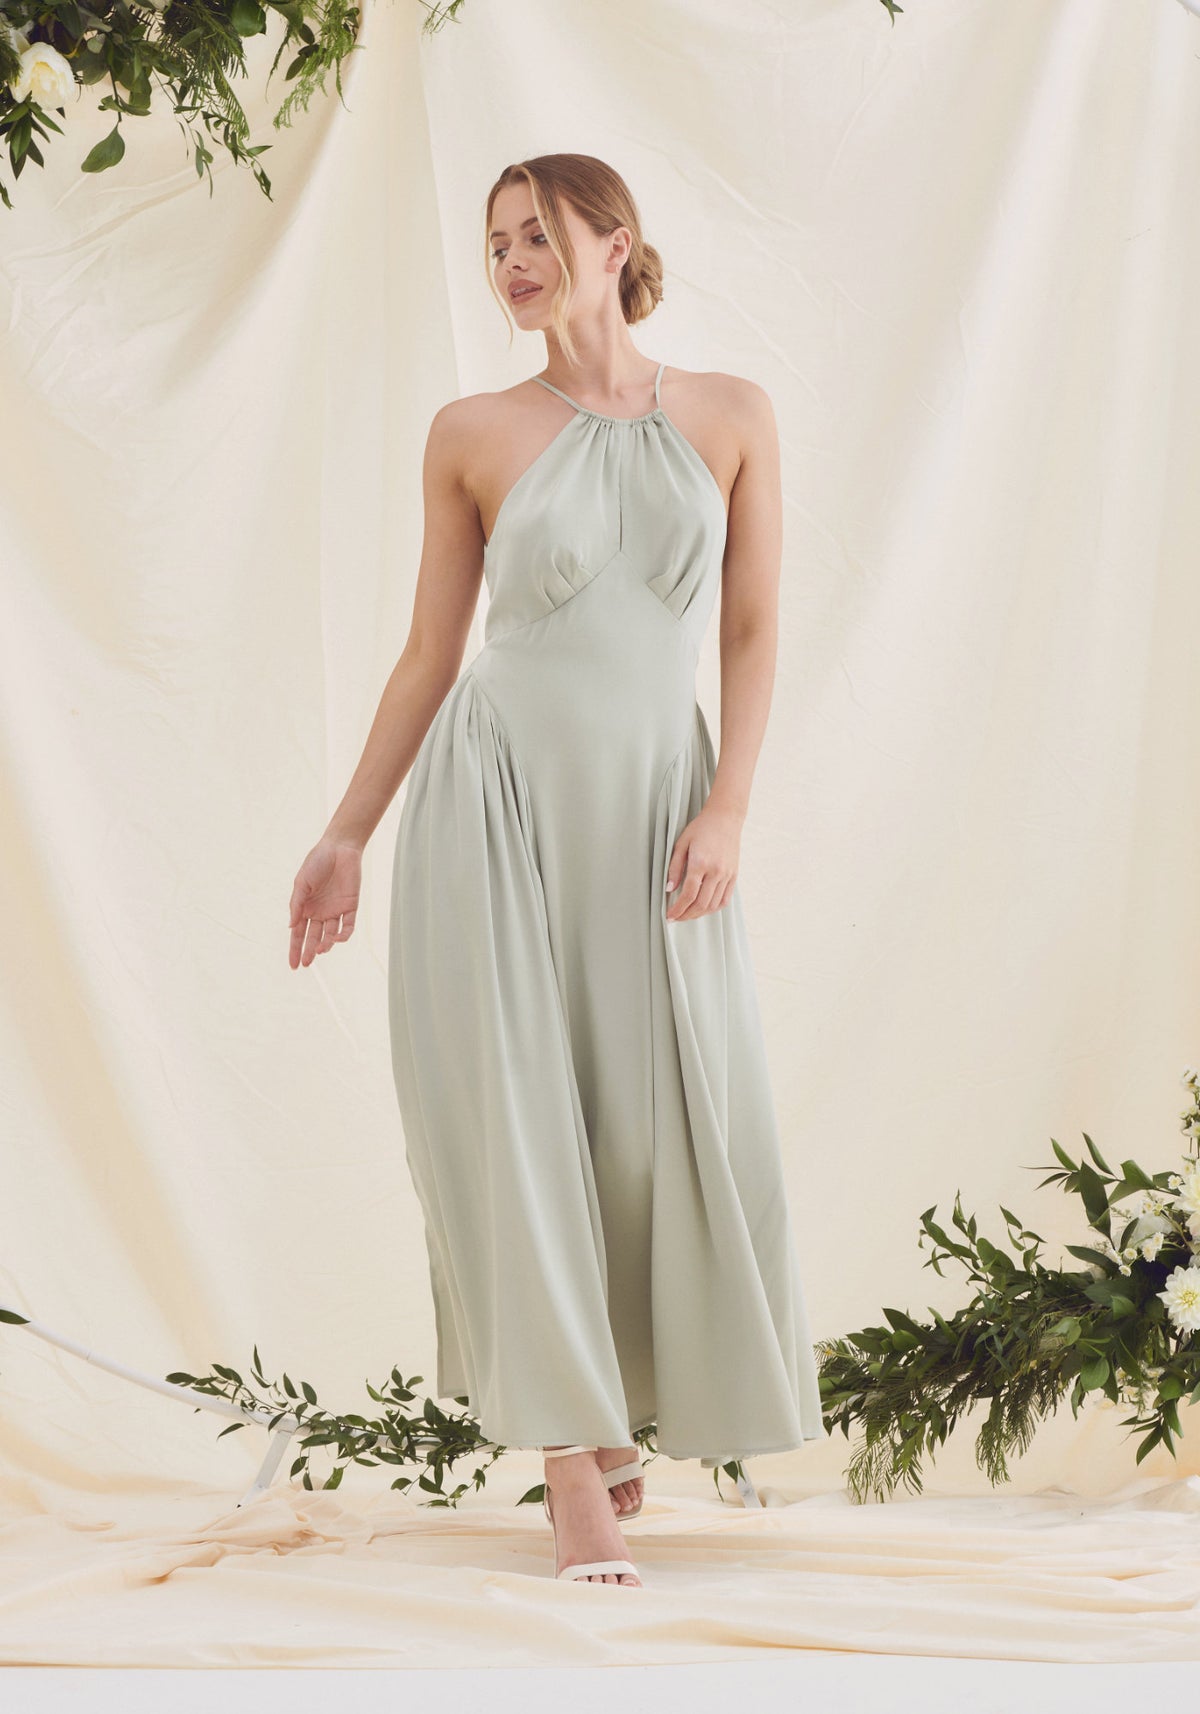 Sage Green Satin Dress For Bridesmaids - Sage Green Satin Maxi Dress UK